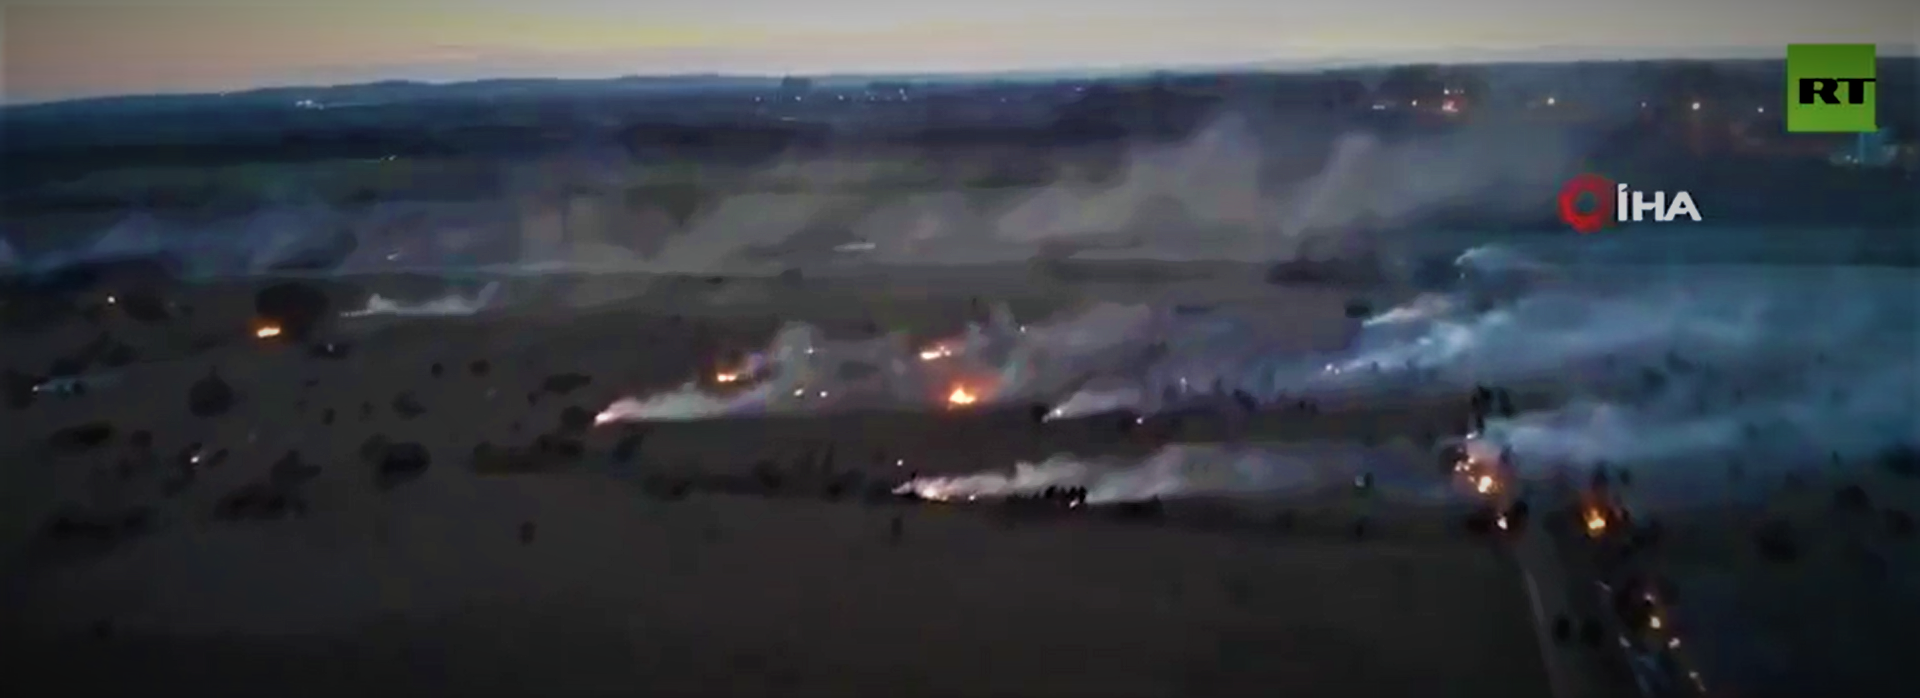 Συγκλονιστικό βίντεο από drone στις Καστανιές του Εβρου: Κατάσταση πολιορκίας